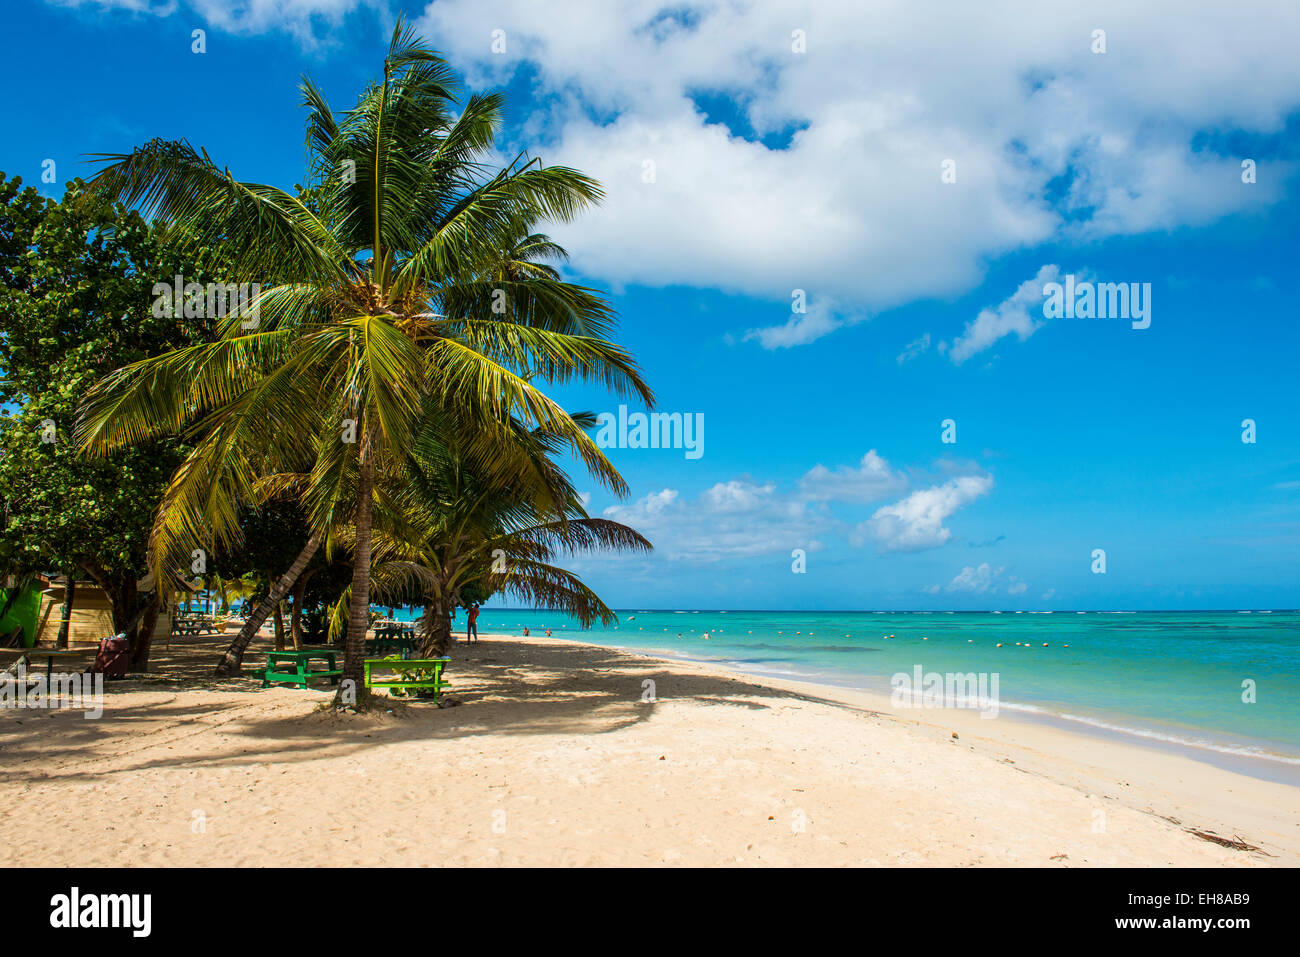 Plage de sable fin et de palmiers de Pigeon Point, Tobago, Trinité-et-Tobago, Antilles, Caraïbes, Amérique Centrale Banque D'Images